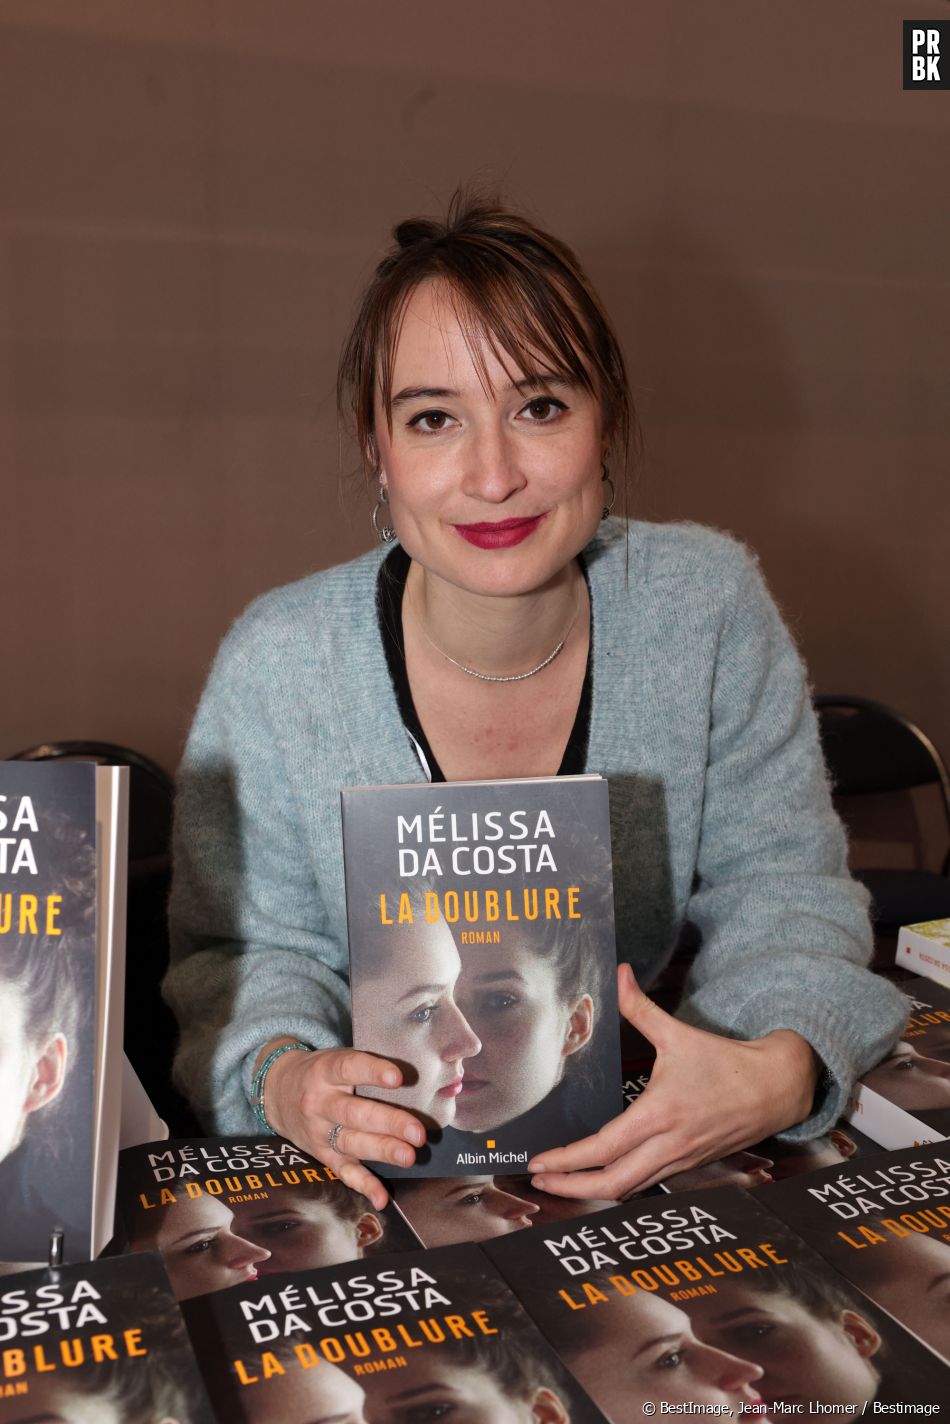 La doublure – Melissa Da Costa – Black Books